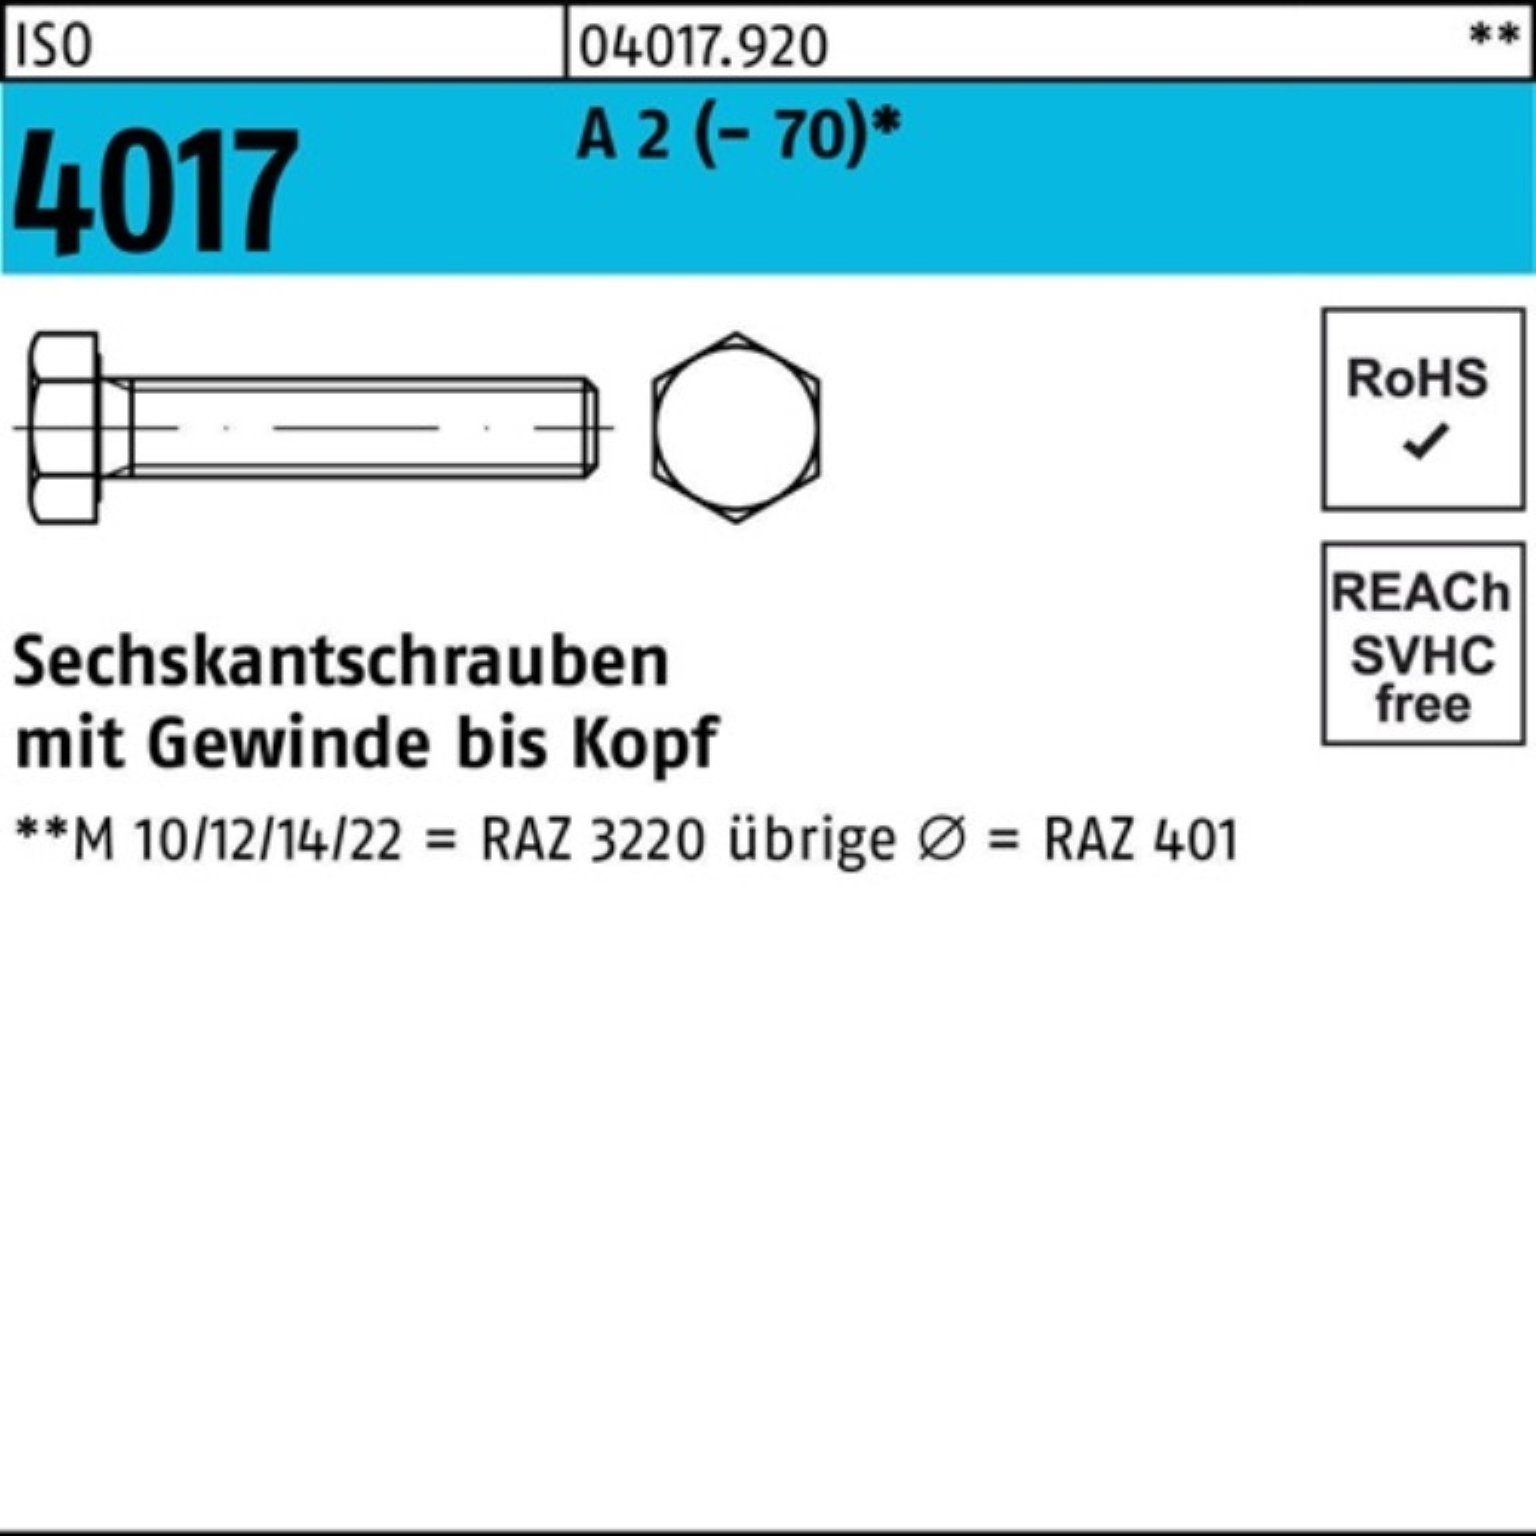 Bufab Sechskantschraube 100er Pack Sechskantschraube ISO 4017 VG M33x 70 A 2 (70) 1 Stück I